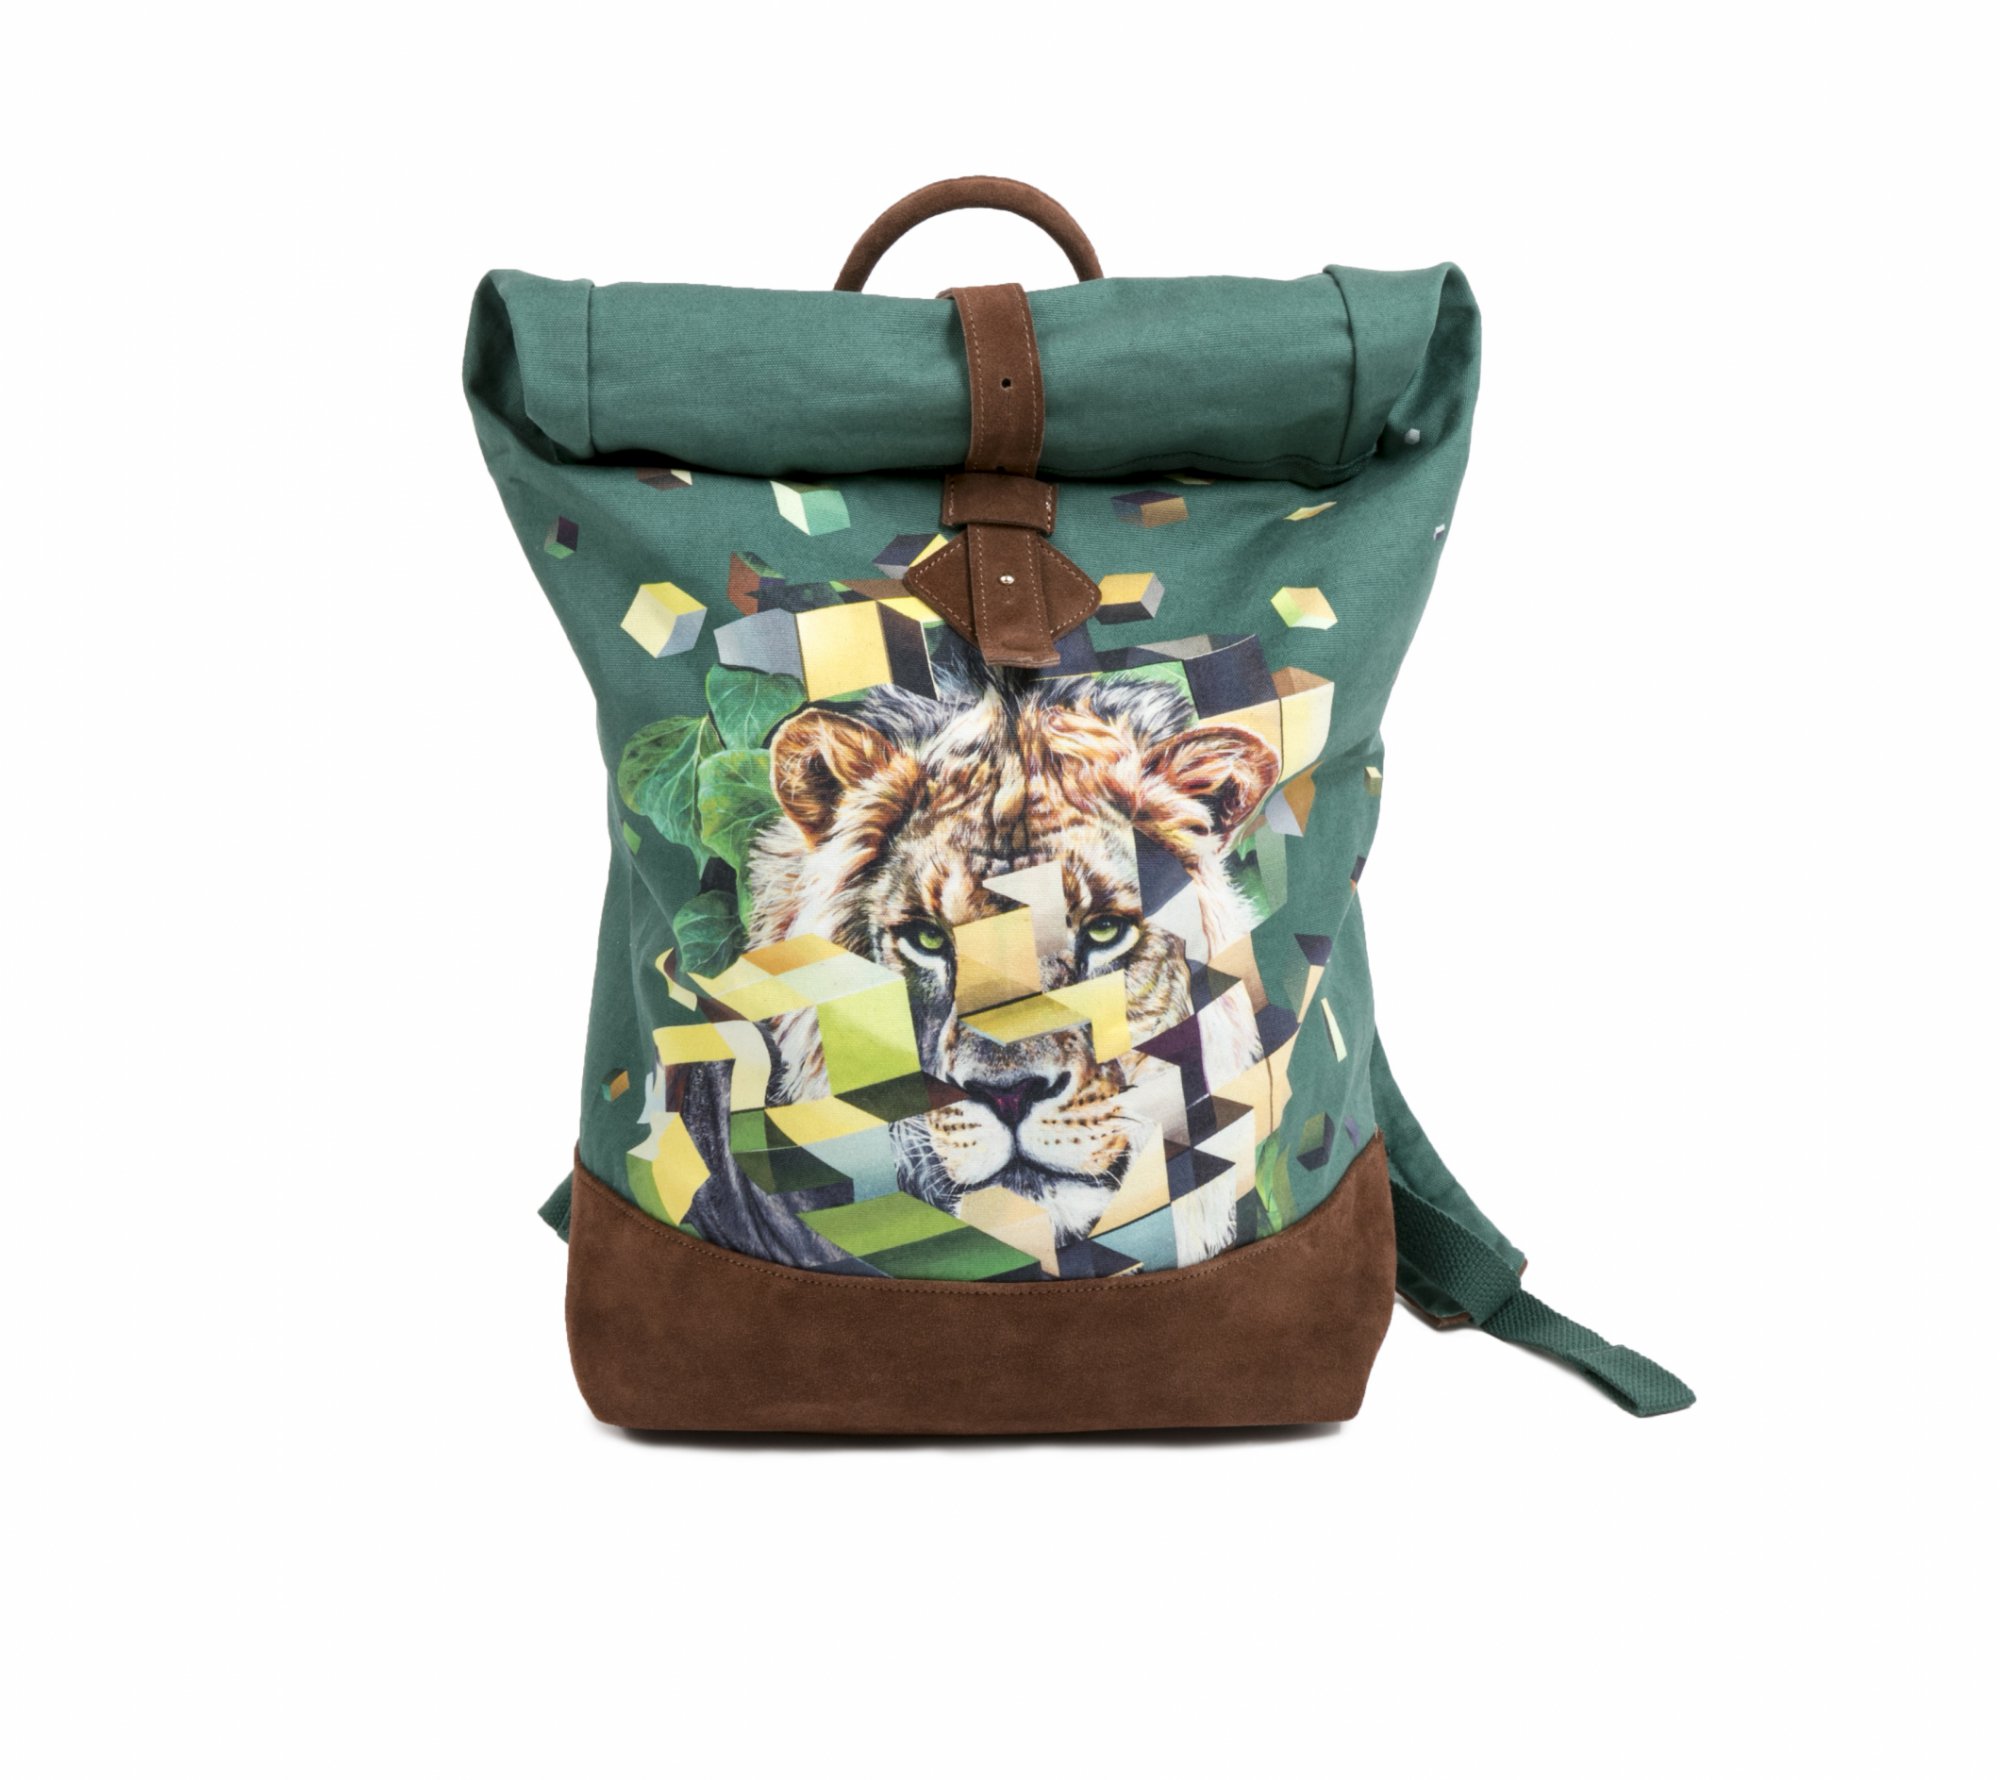 Perrier backpack